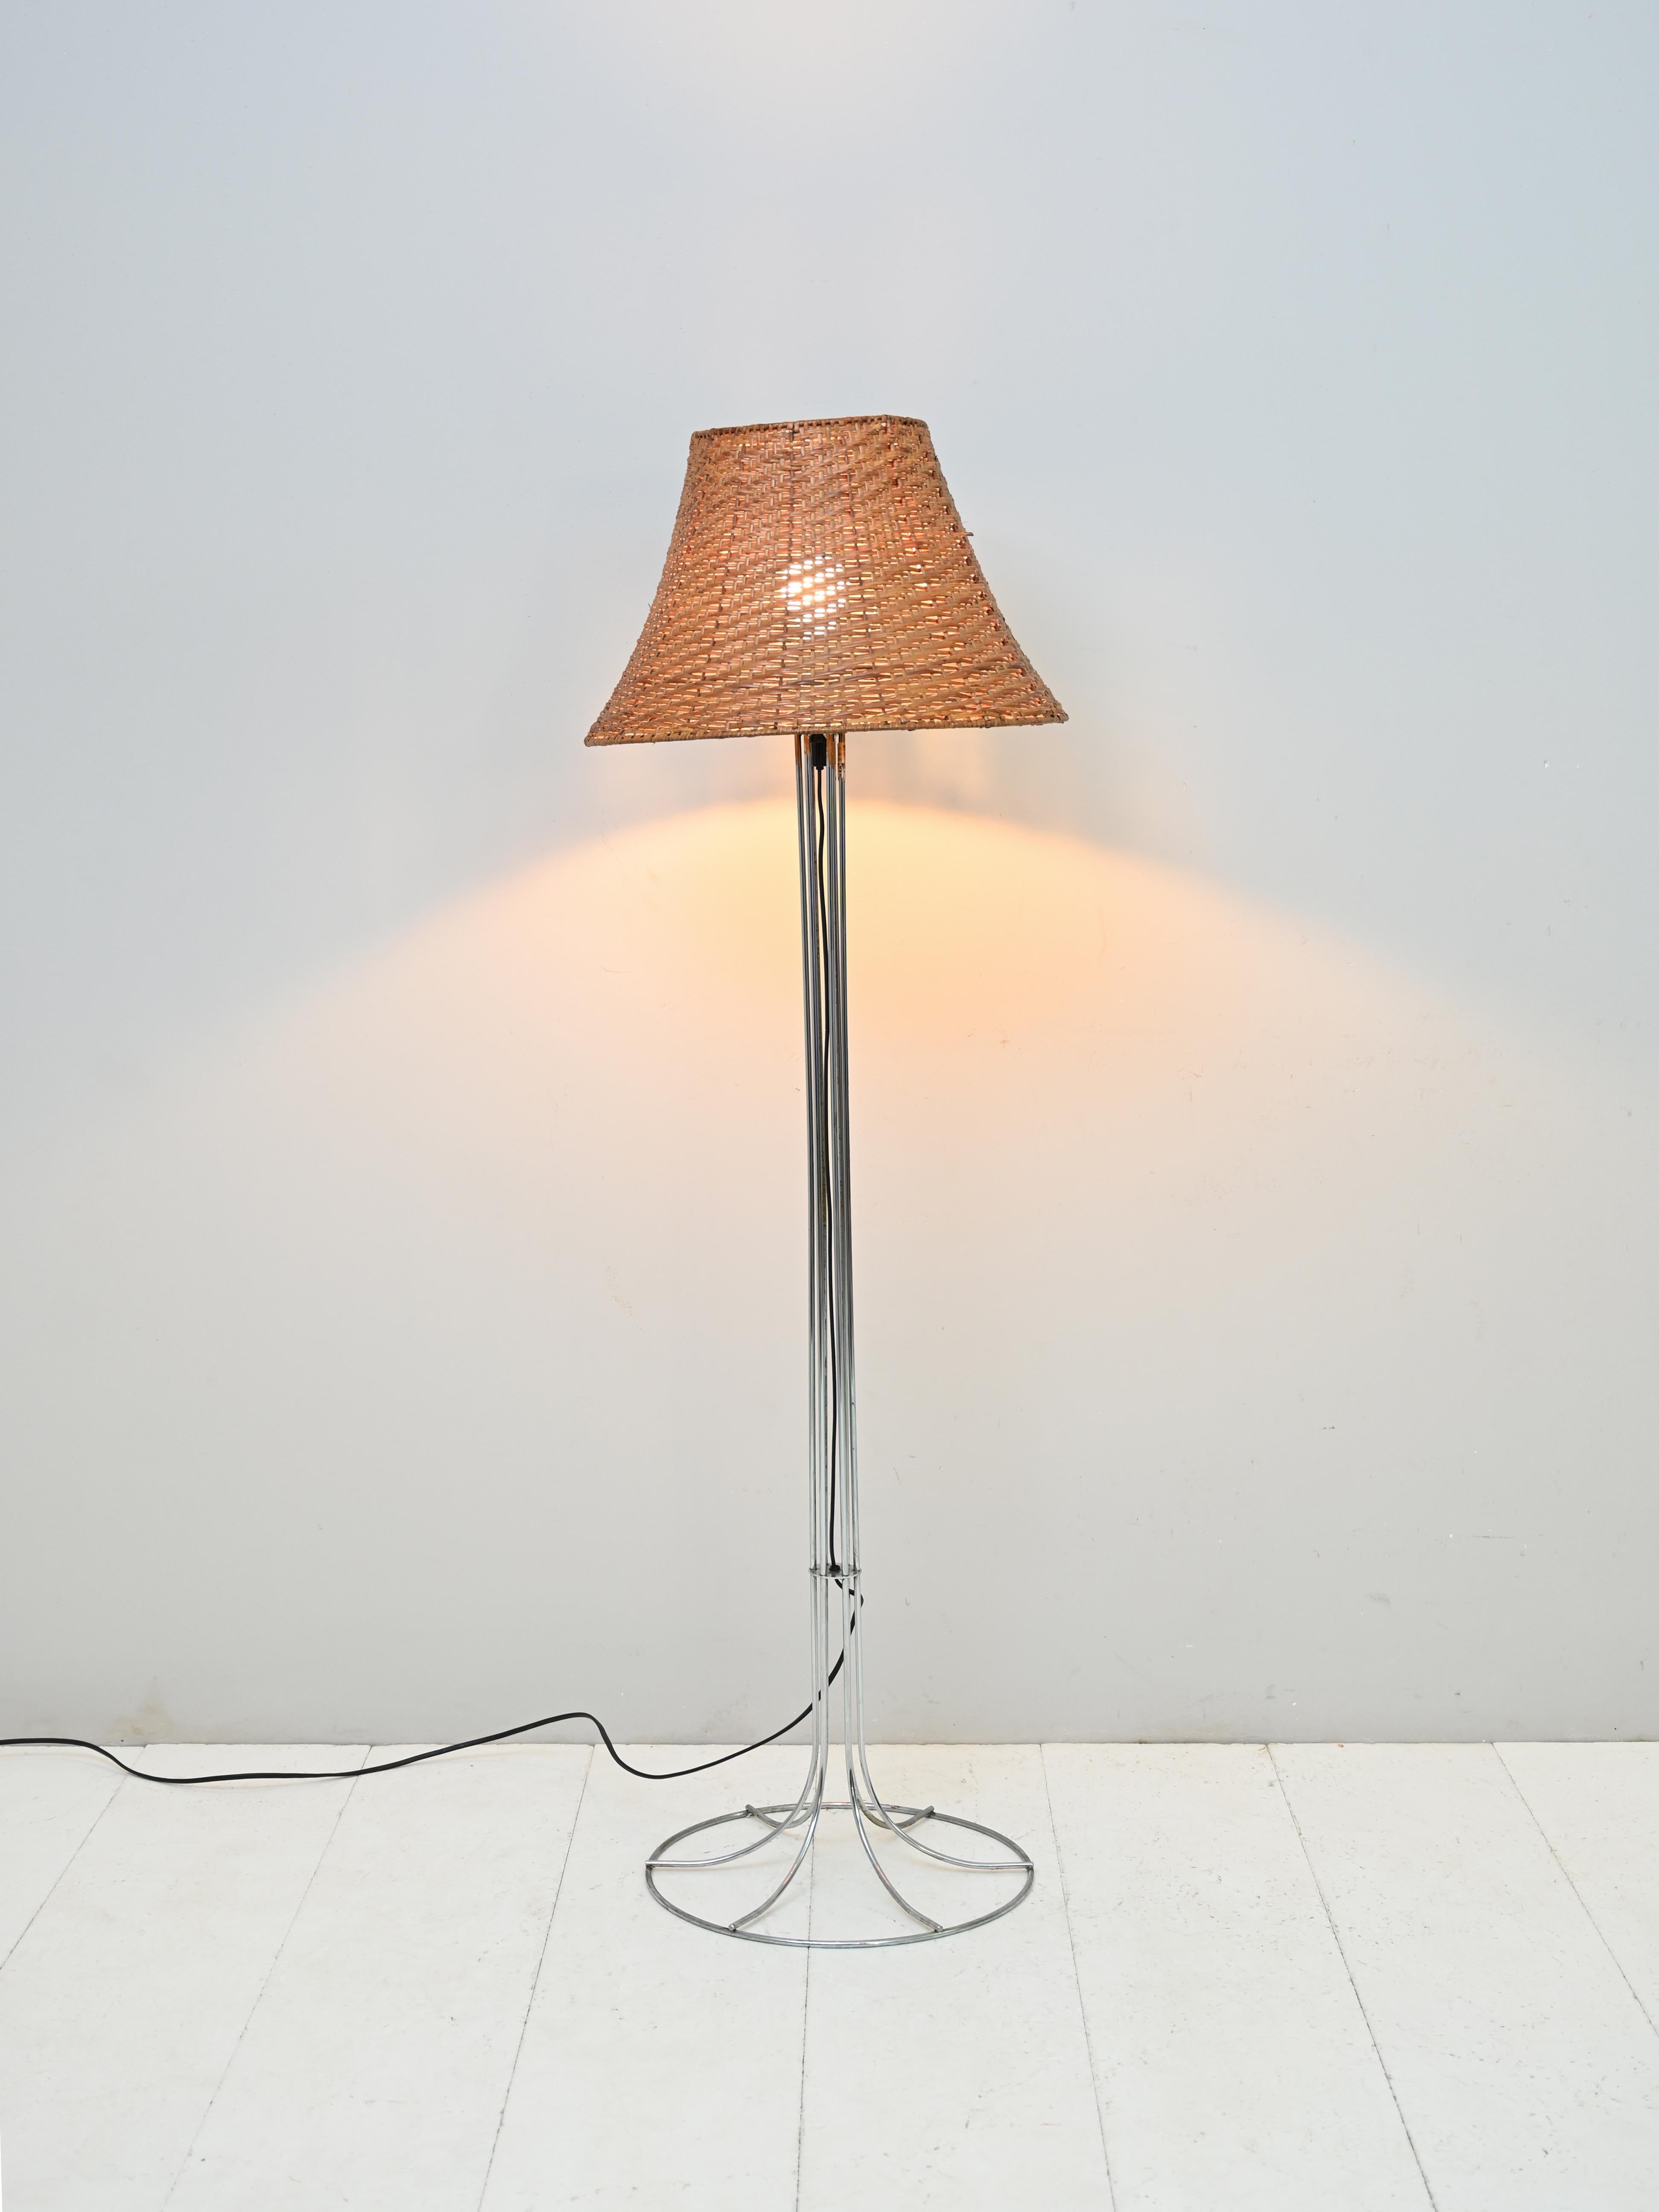 1960er Vintage-Stehlampe.

Eine skandinavische Vintage-Lampe mit Metallsockel und geflochtenem Rattan-Lampenschirm.

Ein modernes Designerstück, das für eine warme und diffuse Beleuchtung im Raum sorgt.

Die Struktur besteht aus gebogenen